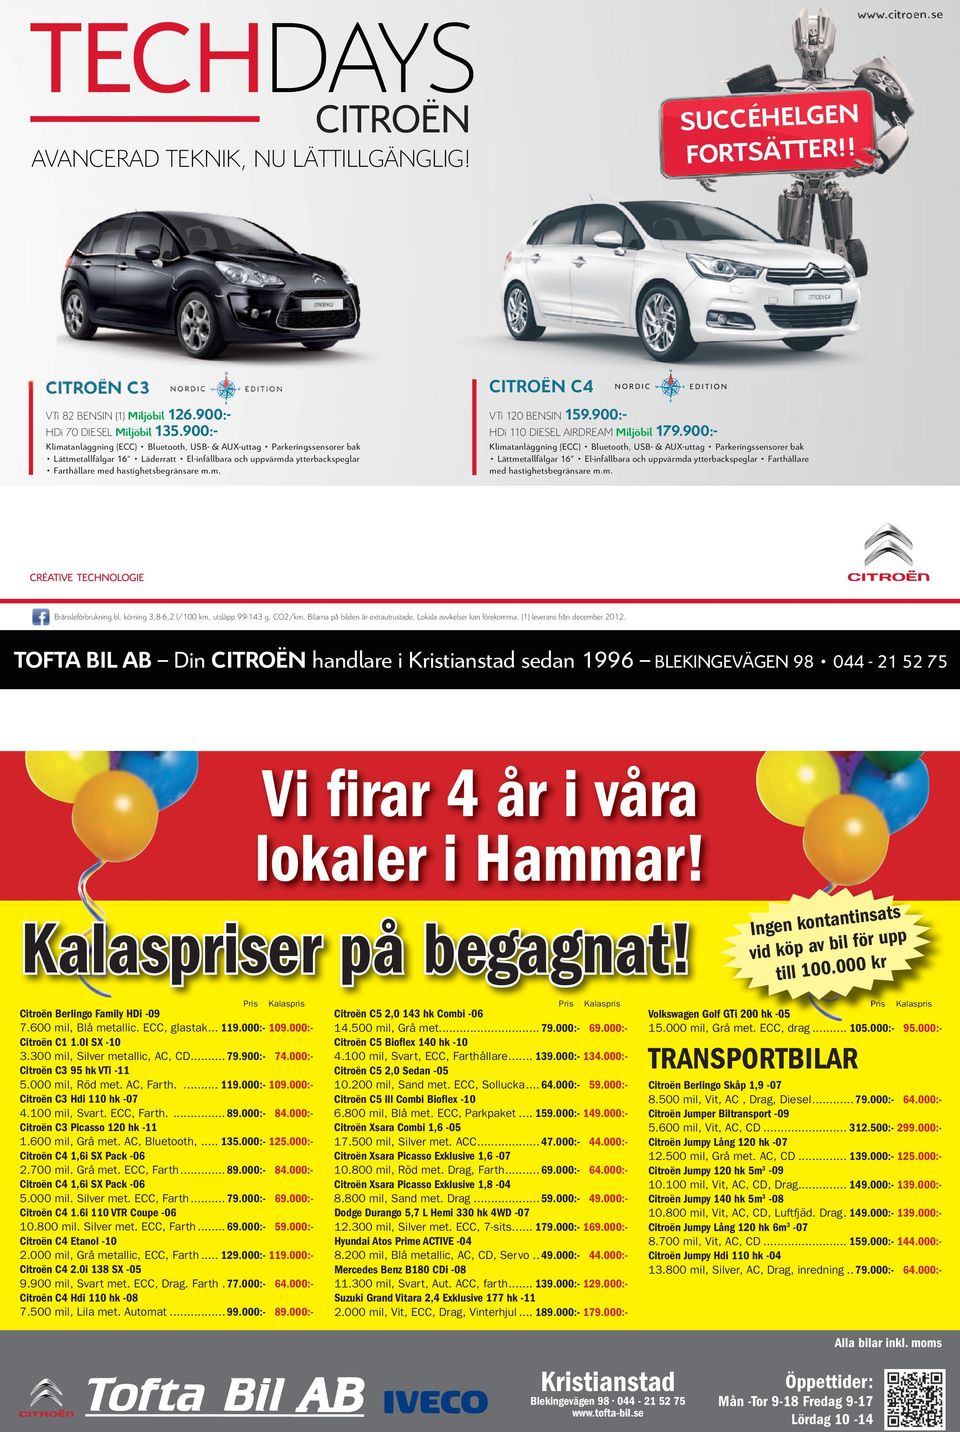 Nu har vi TechDays med många nyheter och lansering av Nordic Edition: välutrustade bilar som trivs på svenska vägar och ger dig massor av teknologi till oslagbara priser. VTi 120 BENSIN 159.